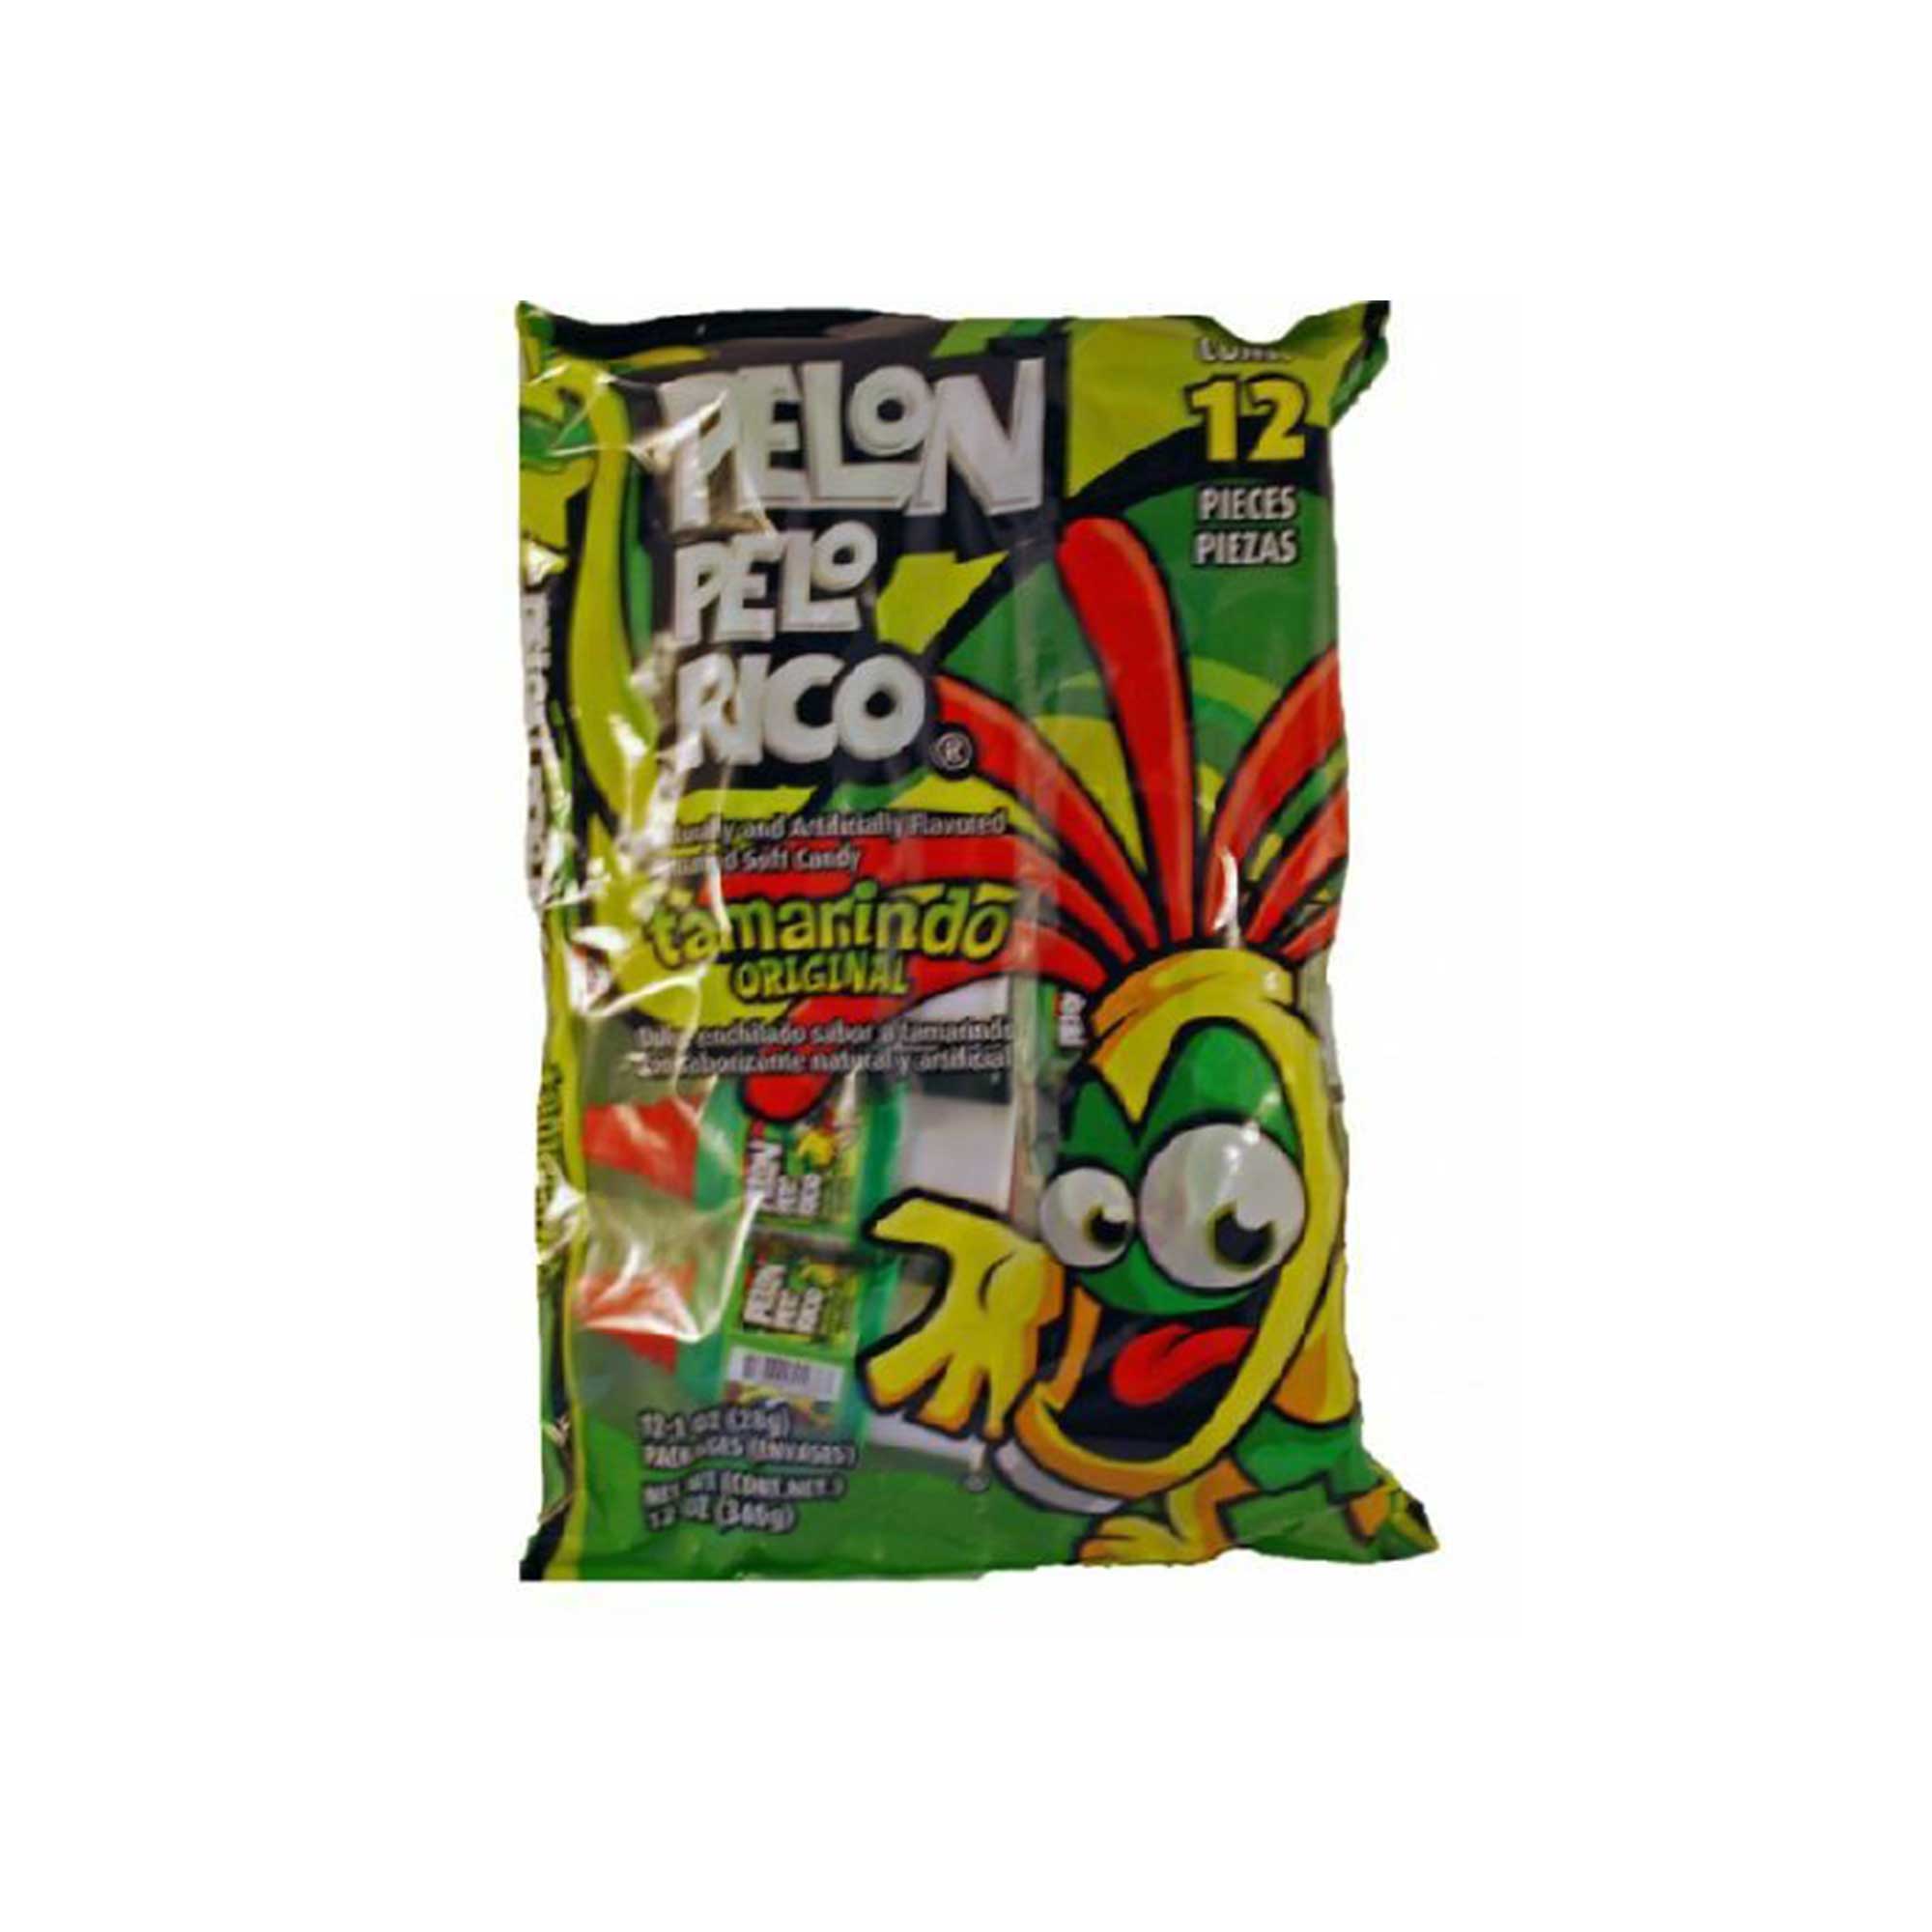 Pelon Pelo Rico Candy - 12 count, 12 oz bag